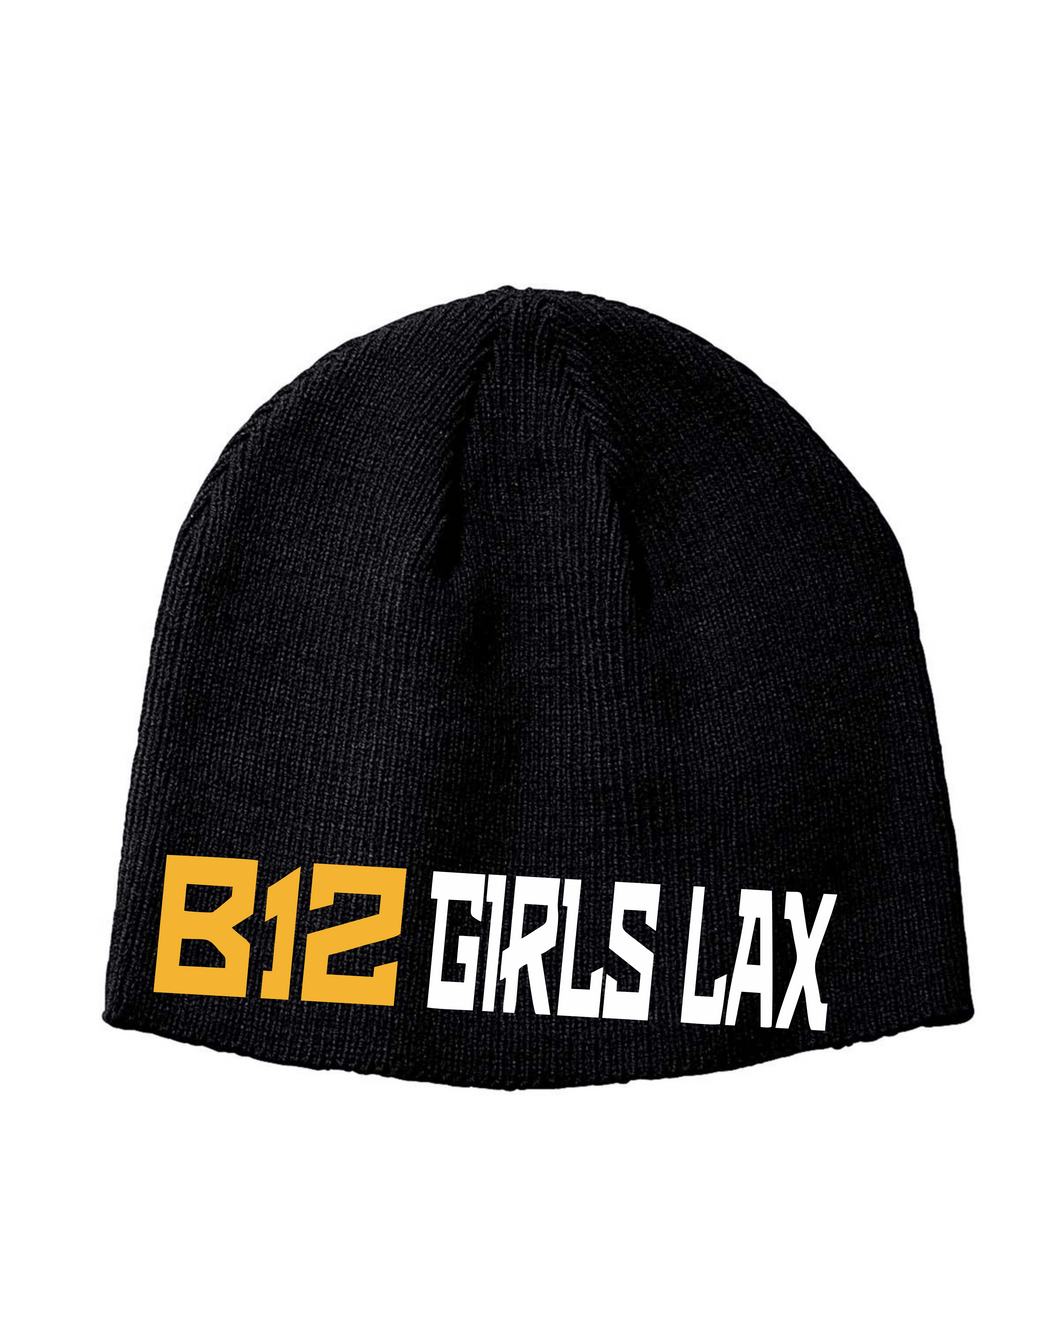 B12-LAX-906-3 - Big Accessories Knit Beanie - B12 Girls LAX Logo